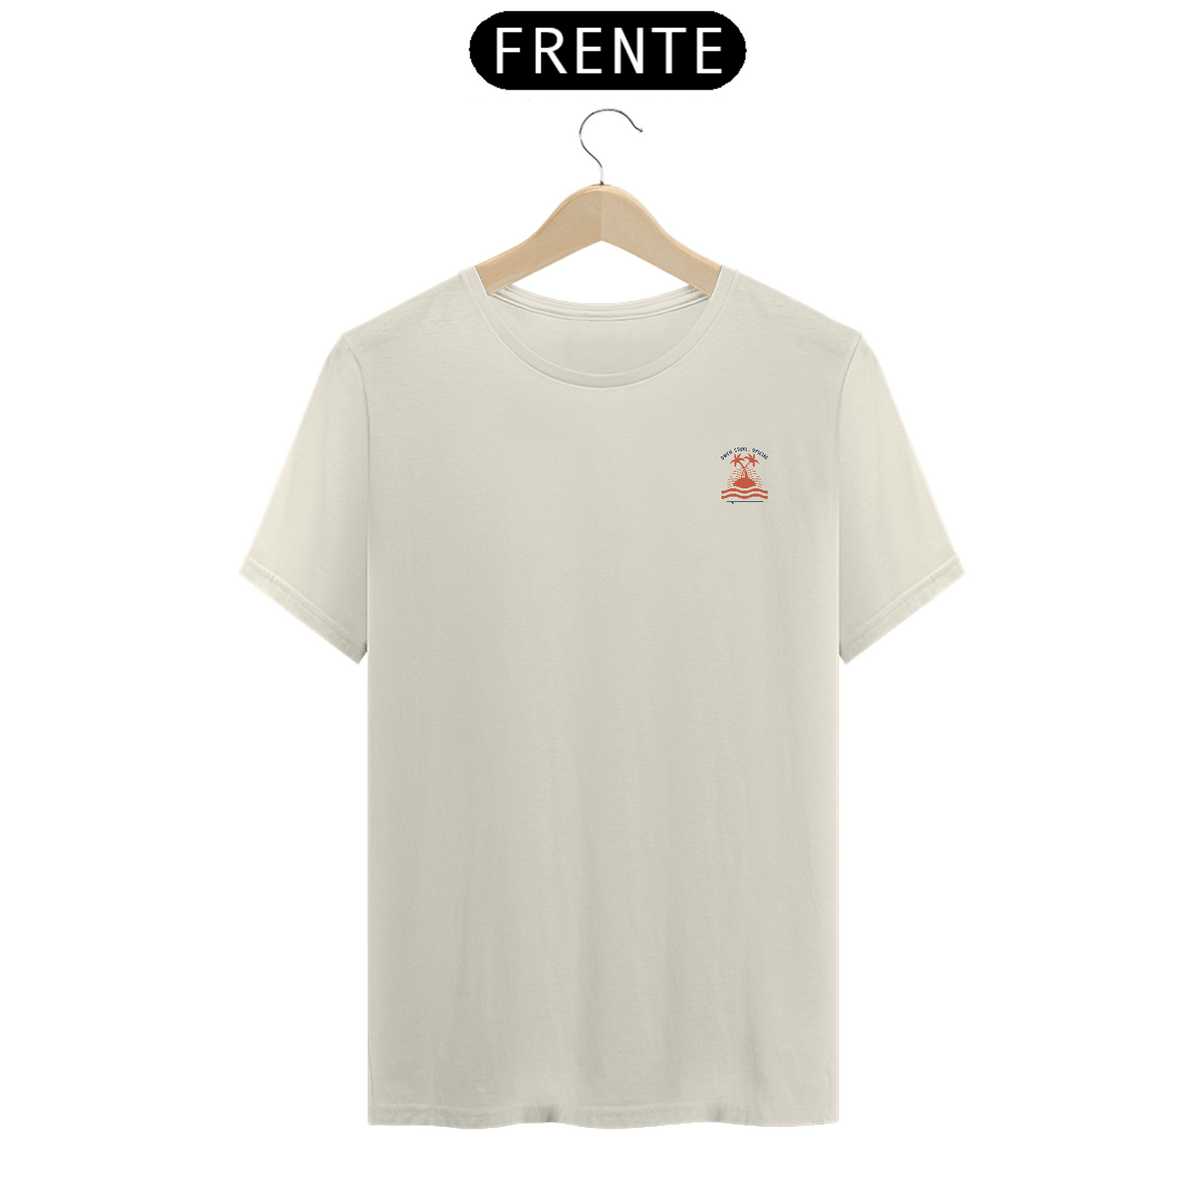 Nome do produto: T-Shirt Pima Owen 